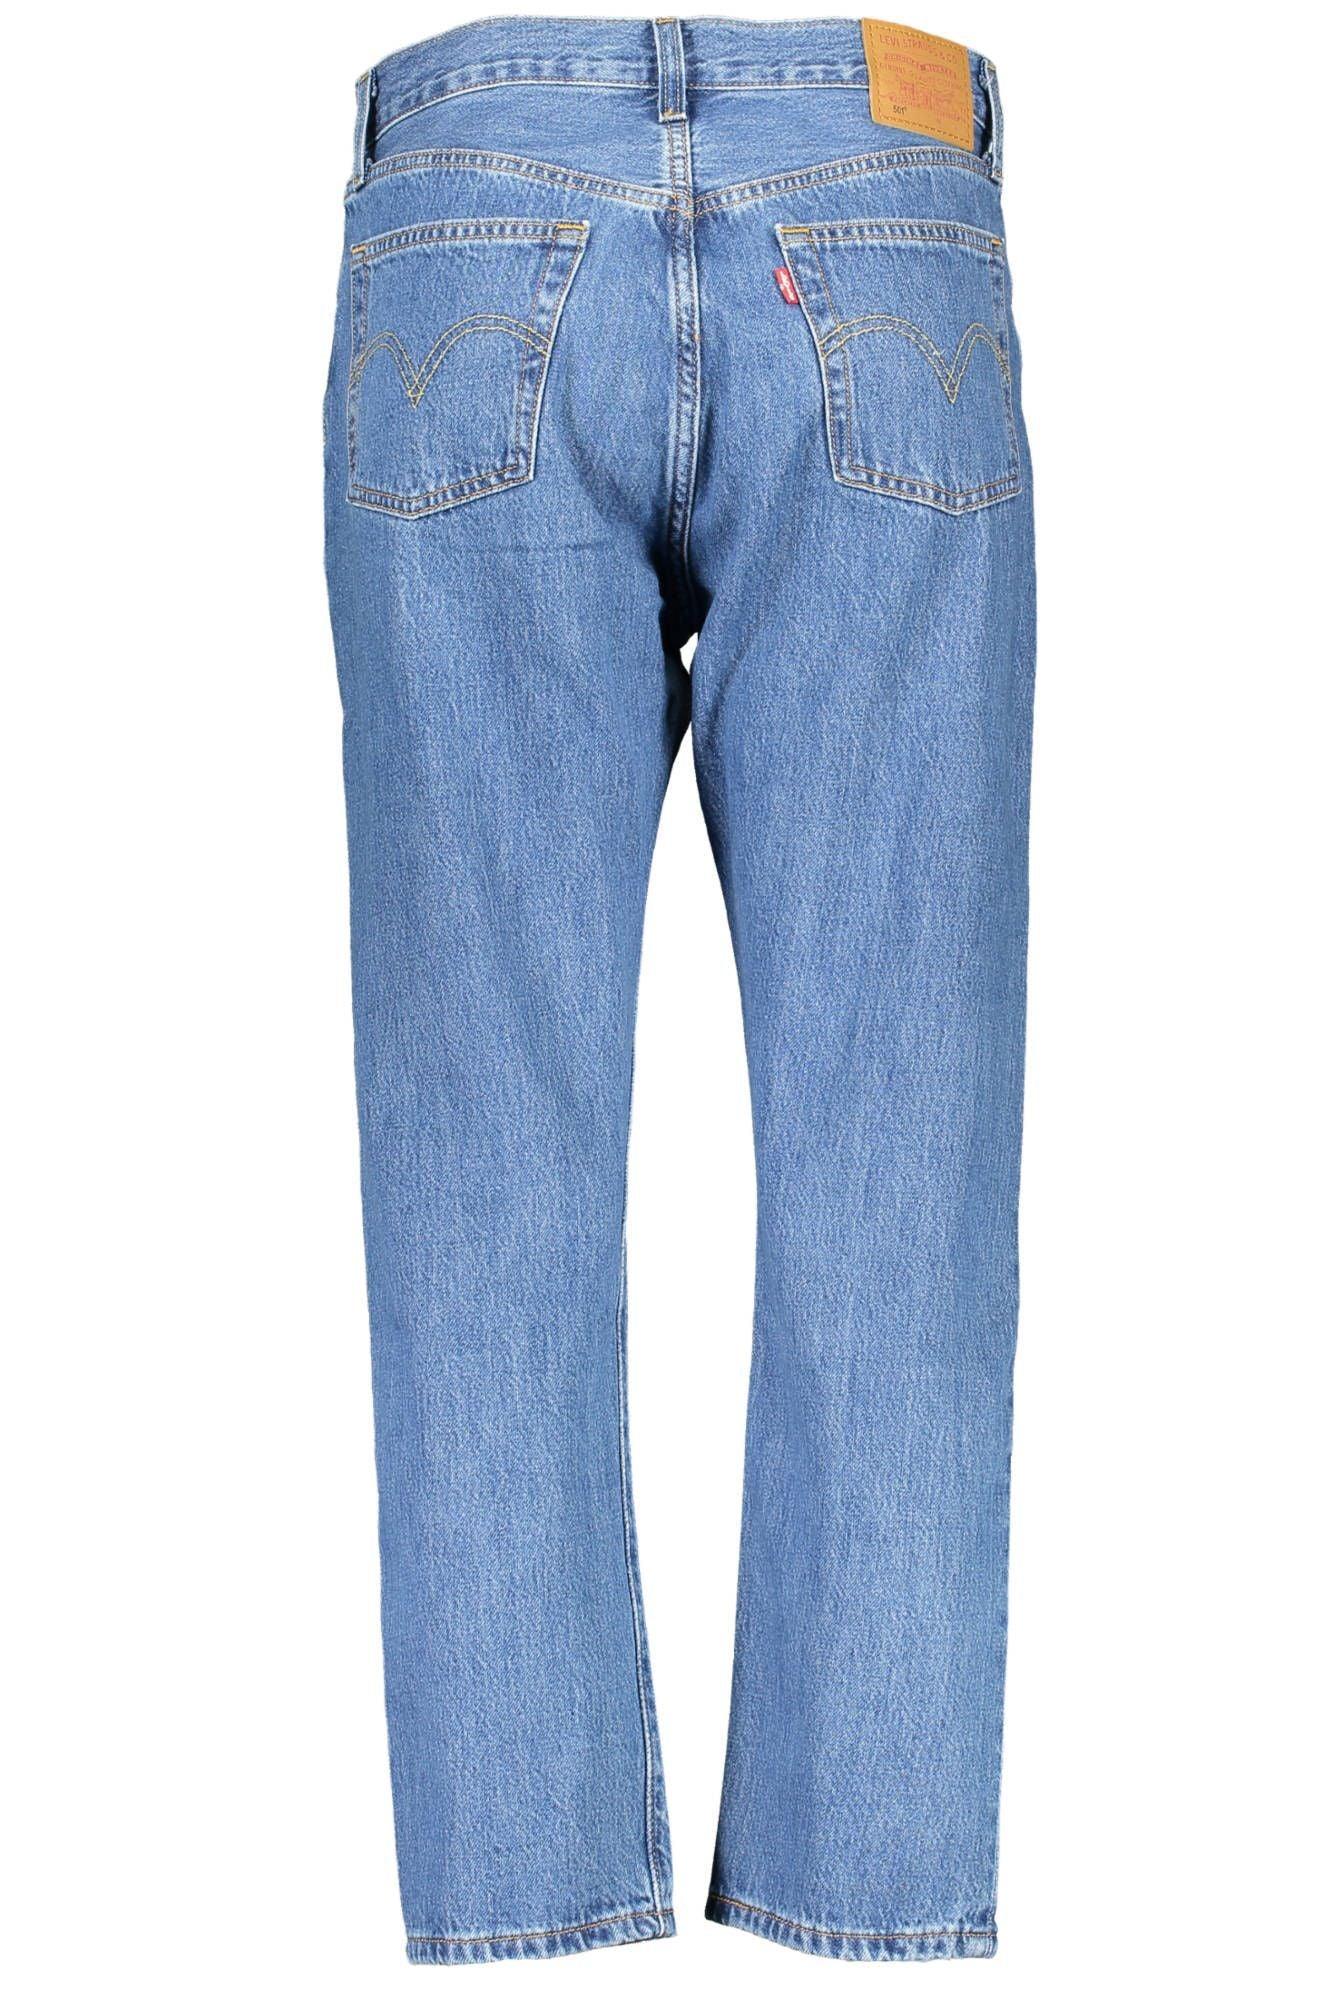 Levi's Chic Blue Cotton 5-Pocket Jeans for Women - PER.FASHION